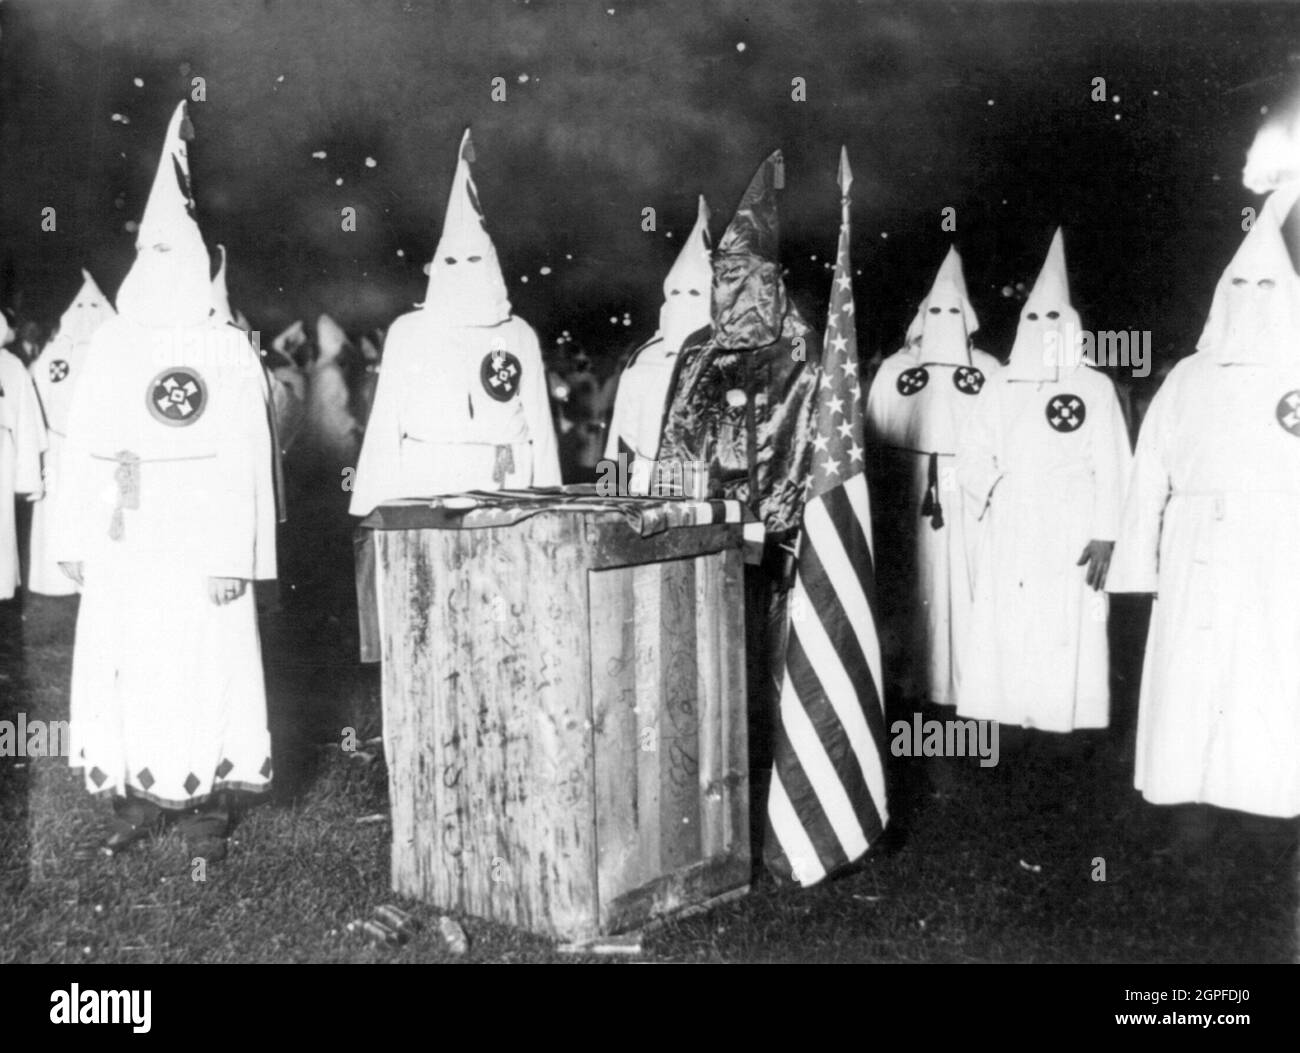 Vintage-Foto um 1920, das Mitglieder des Ku Klux Klan aus Chicago und Illinois zeigt, die in Roben vor einem Altar während einer Mitternachtsversammlung von 30,000 Mitgliedern posieren Stockfoto